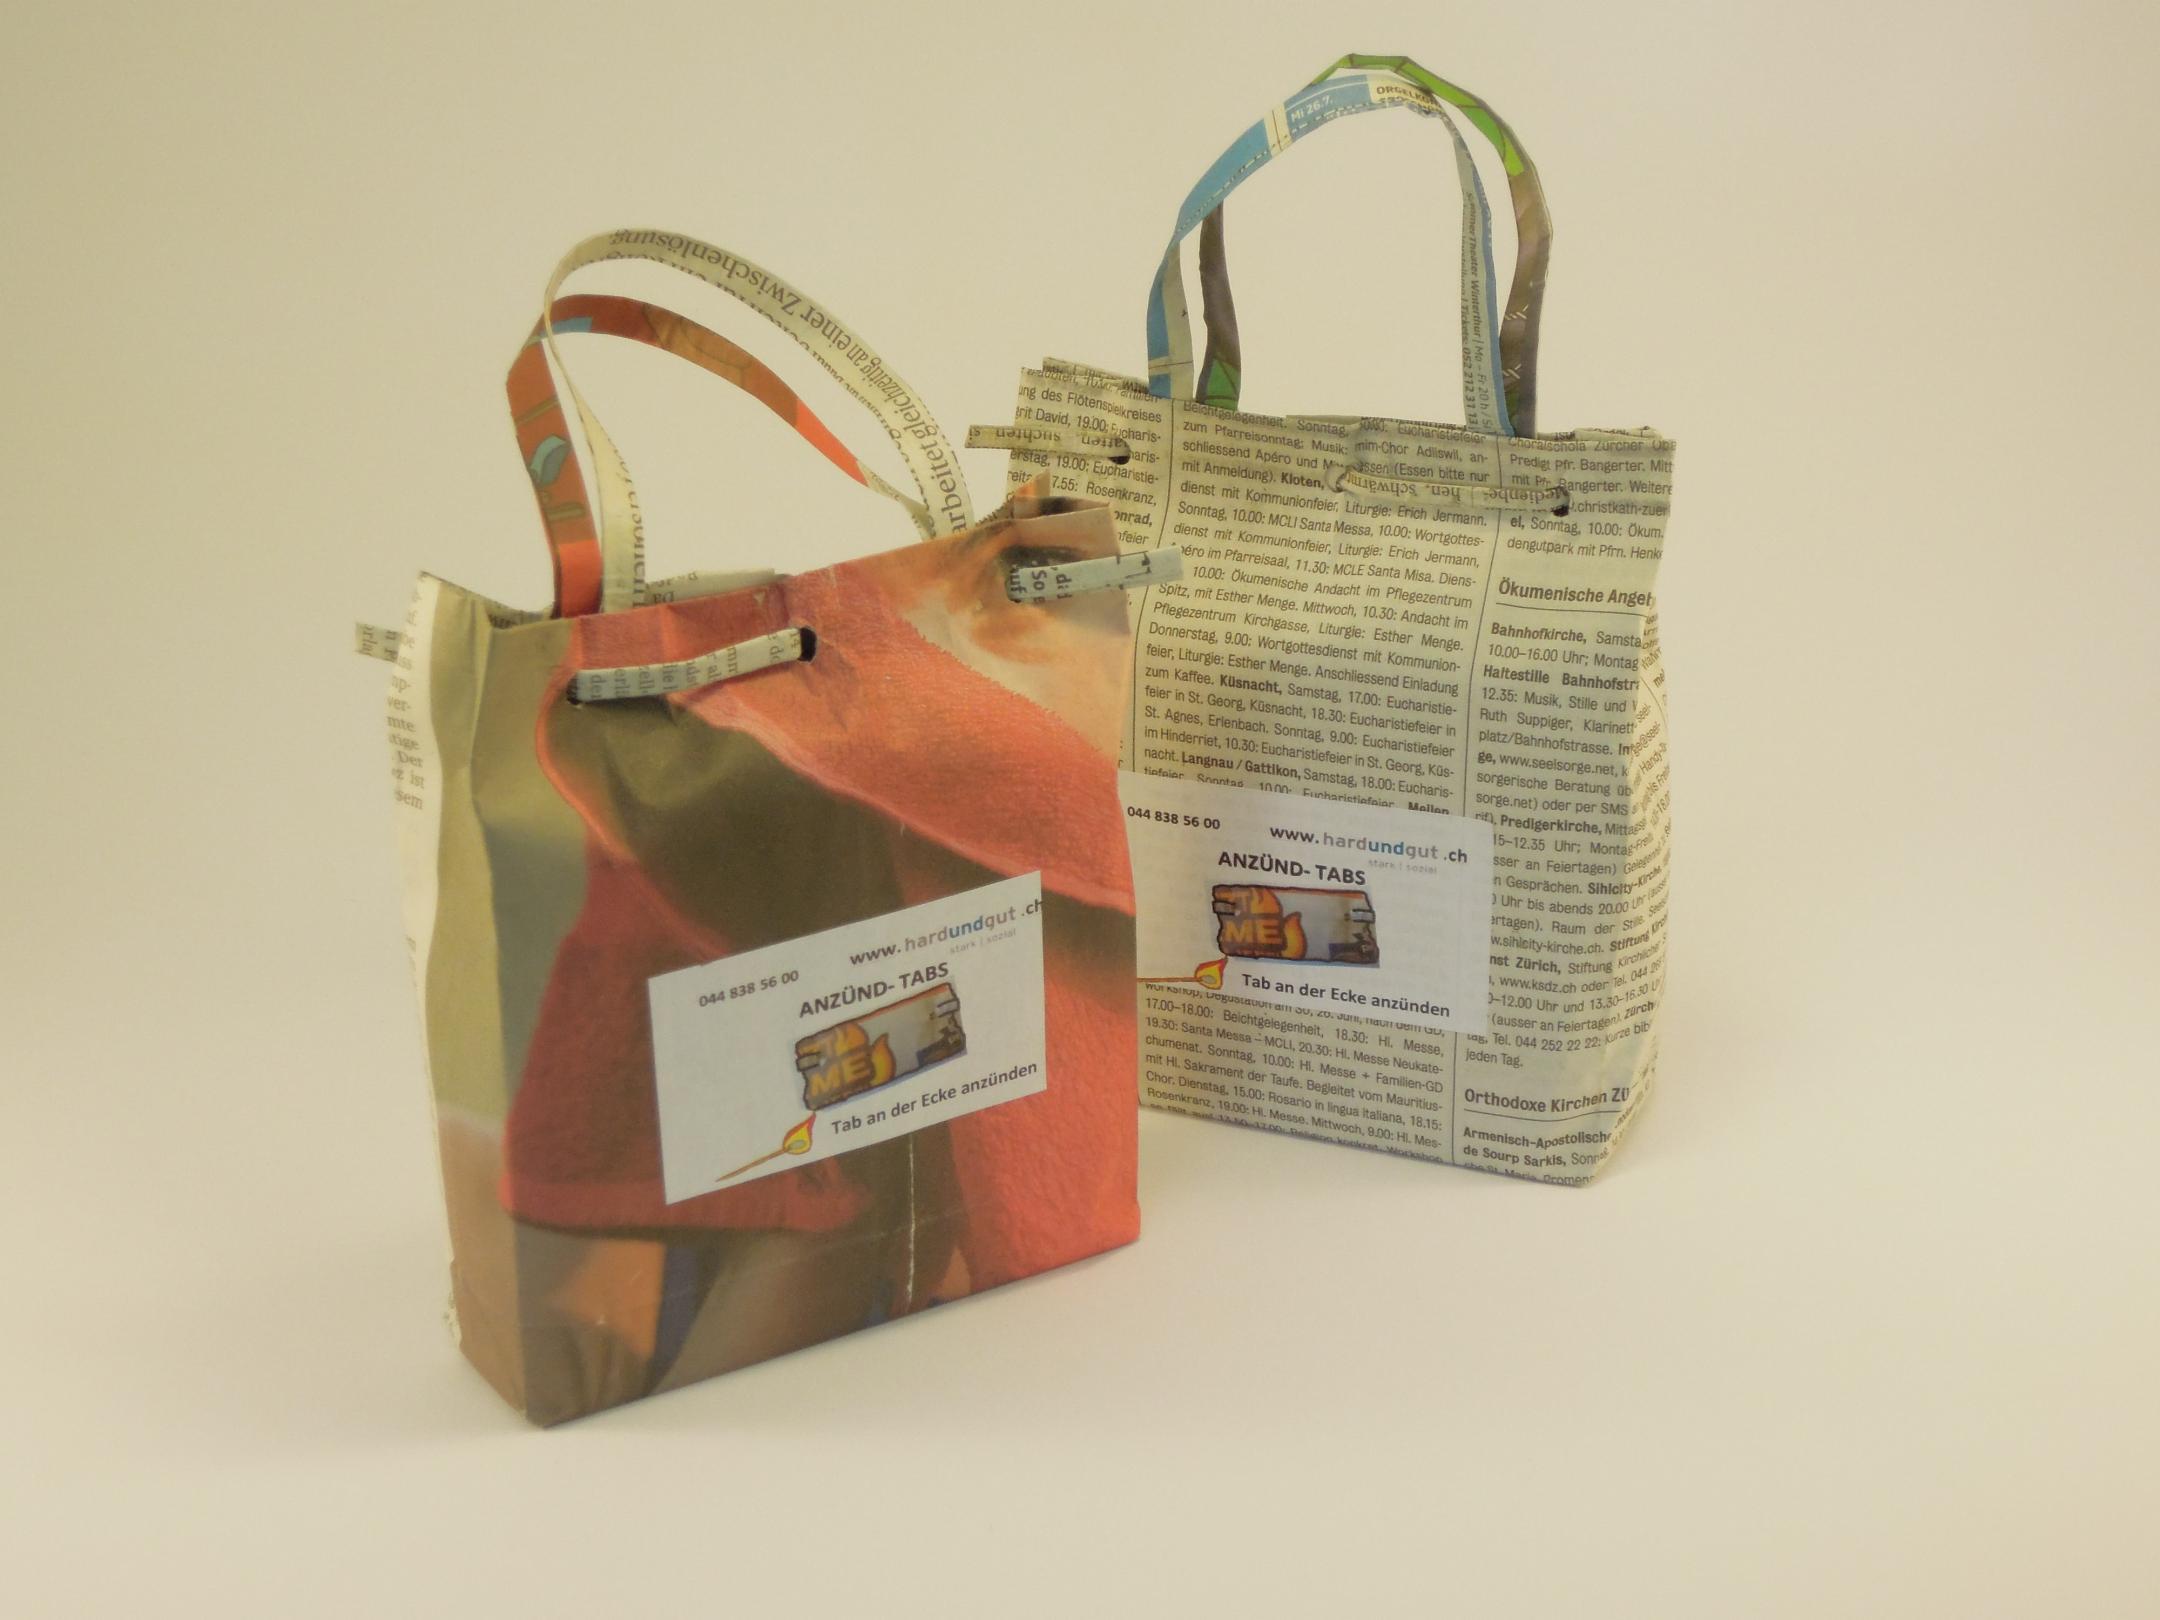 Auf dem Bild sind zwei Geschenktaschen aus Zeitungspapier zu sehen. Der Hintergrund ist neutral.